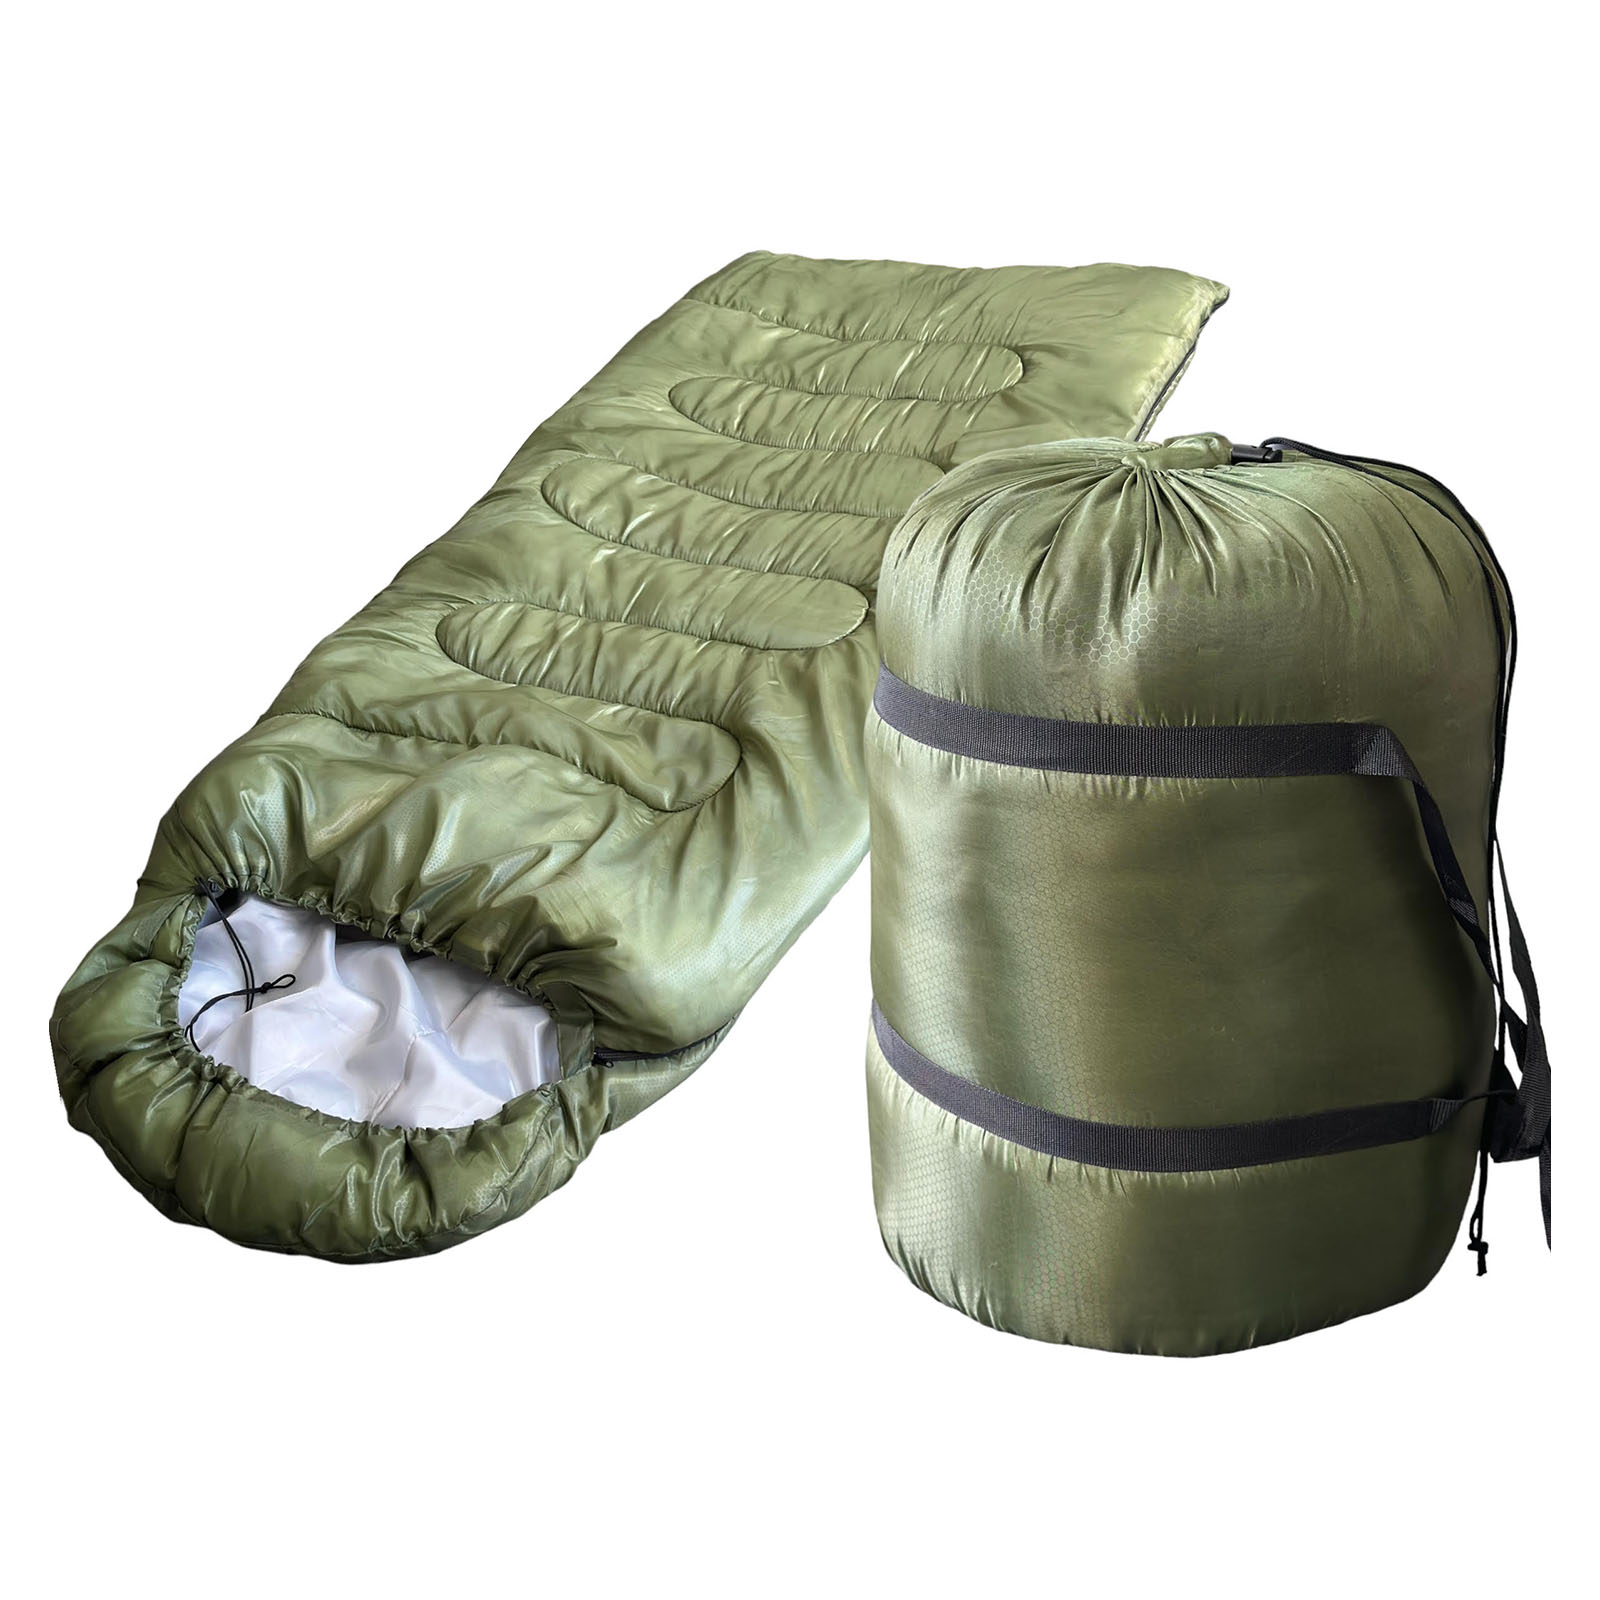  Купить теплый армейский полутораместный спальный мешок